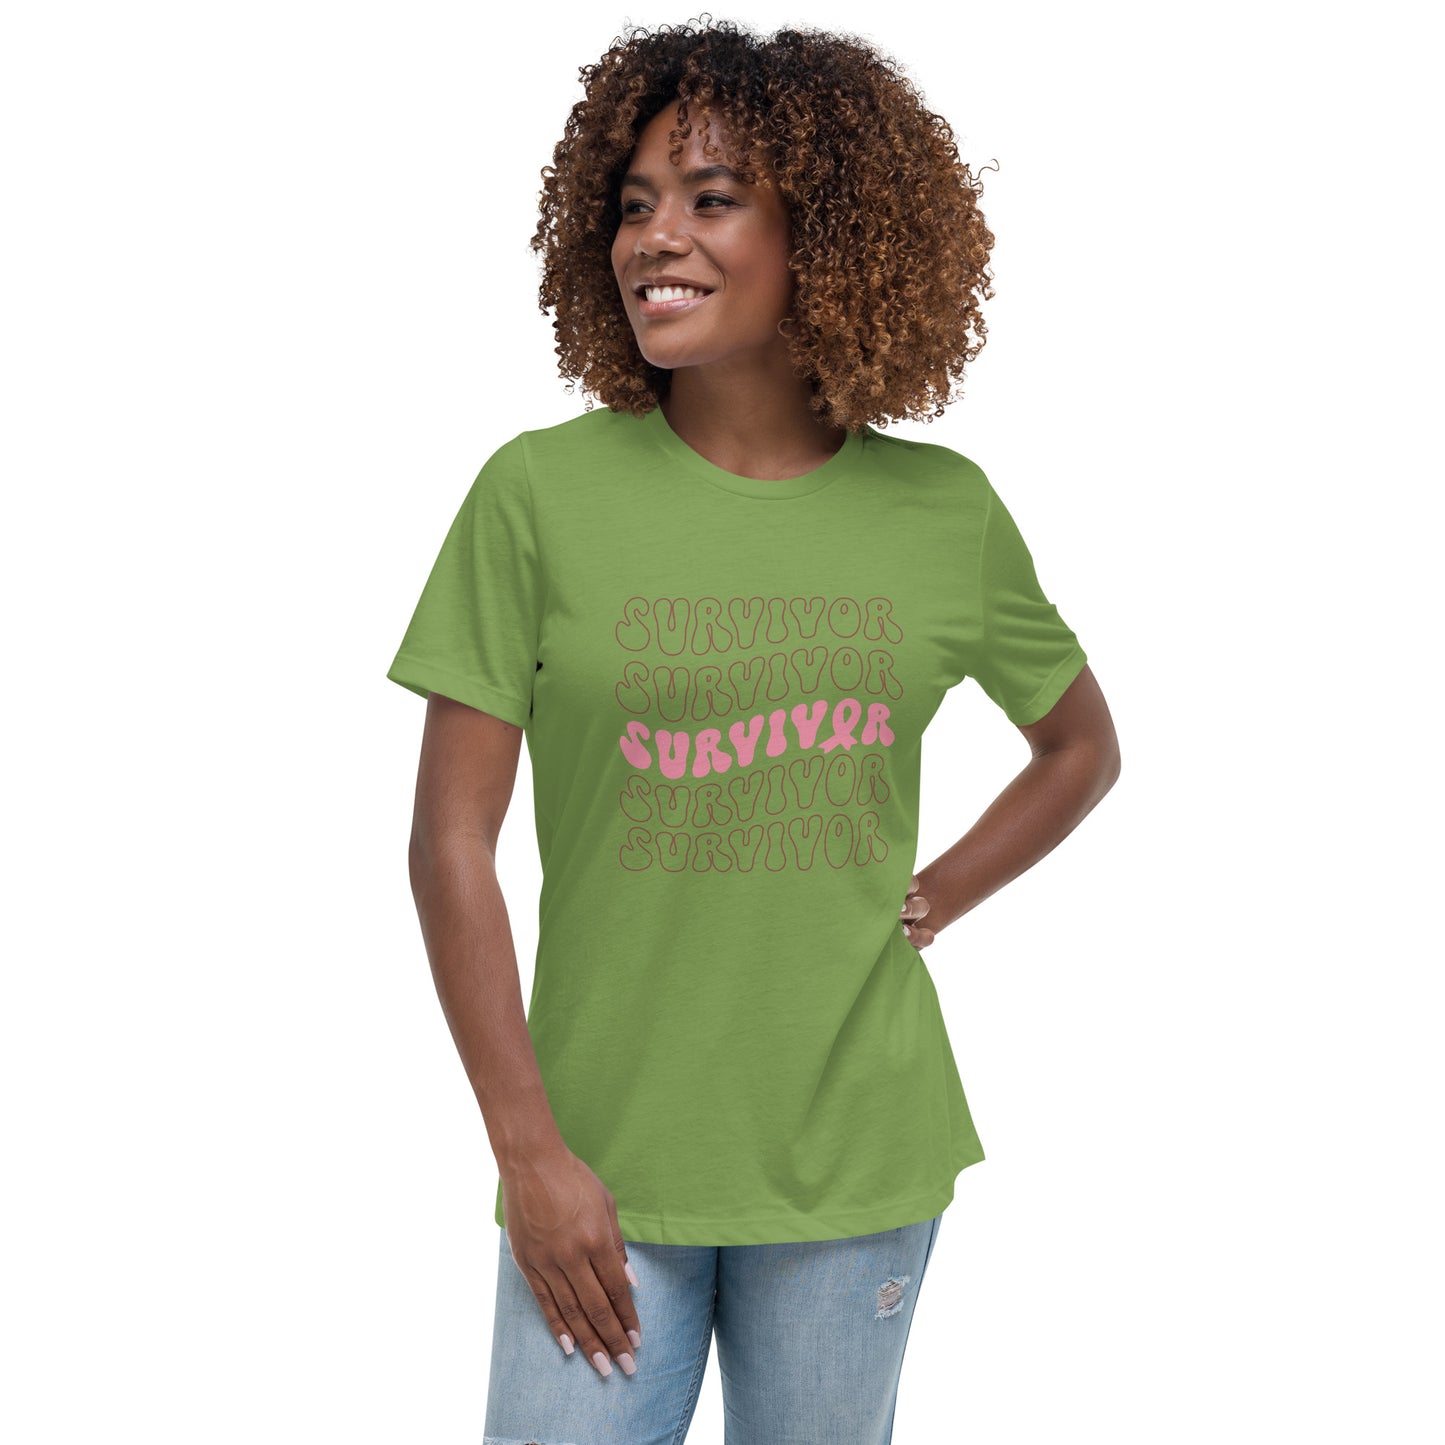 Survivor Women's Relaxed T-Shirt